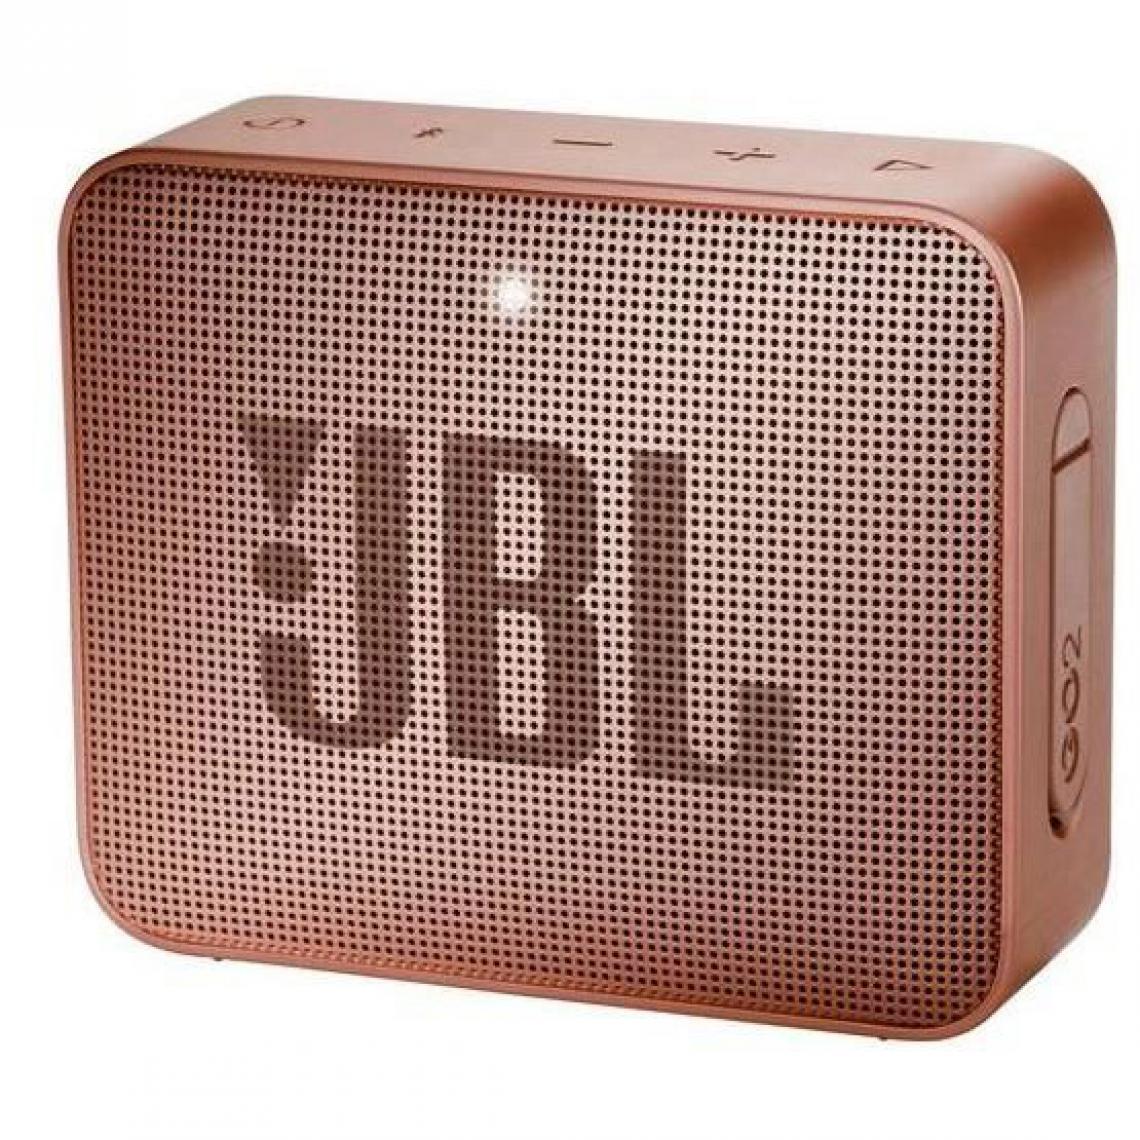 JBL - GO 2, 1.0 canaux, 4 cm, 3 W, 180 - Enceintes Hifi